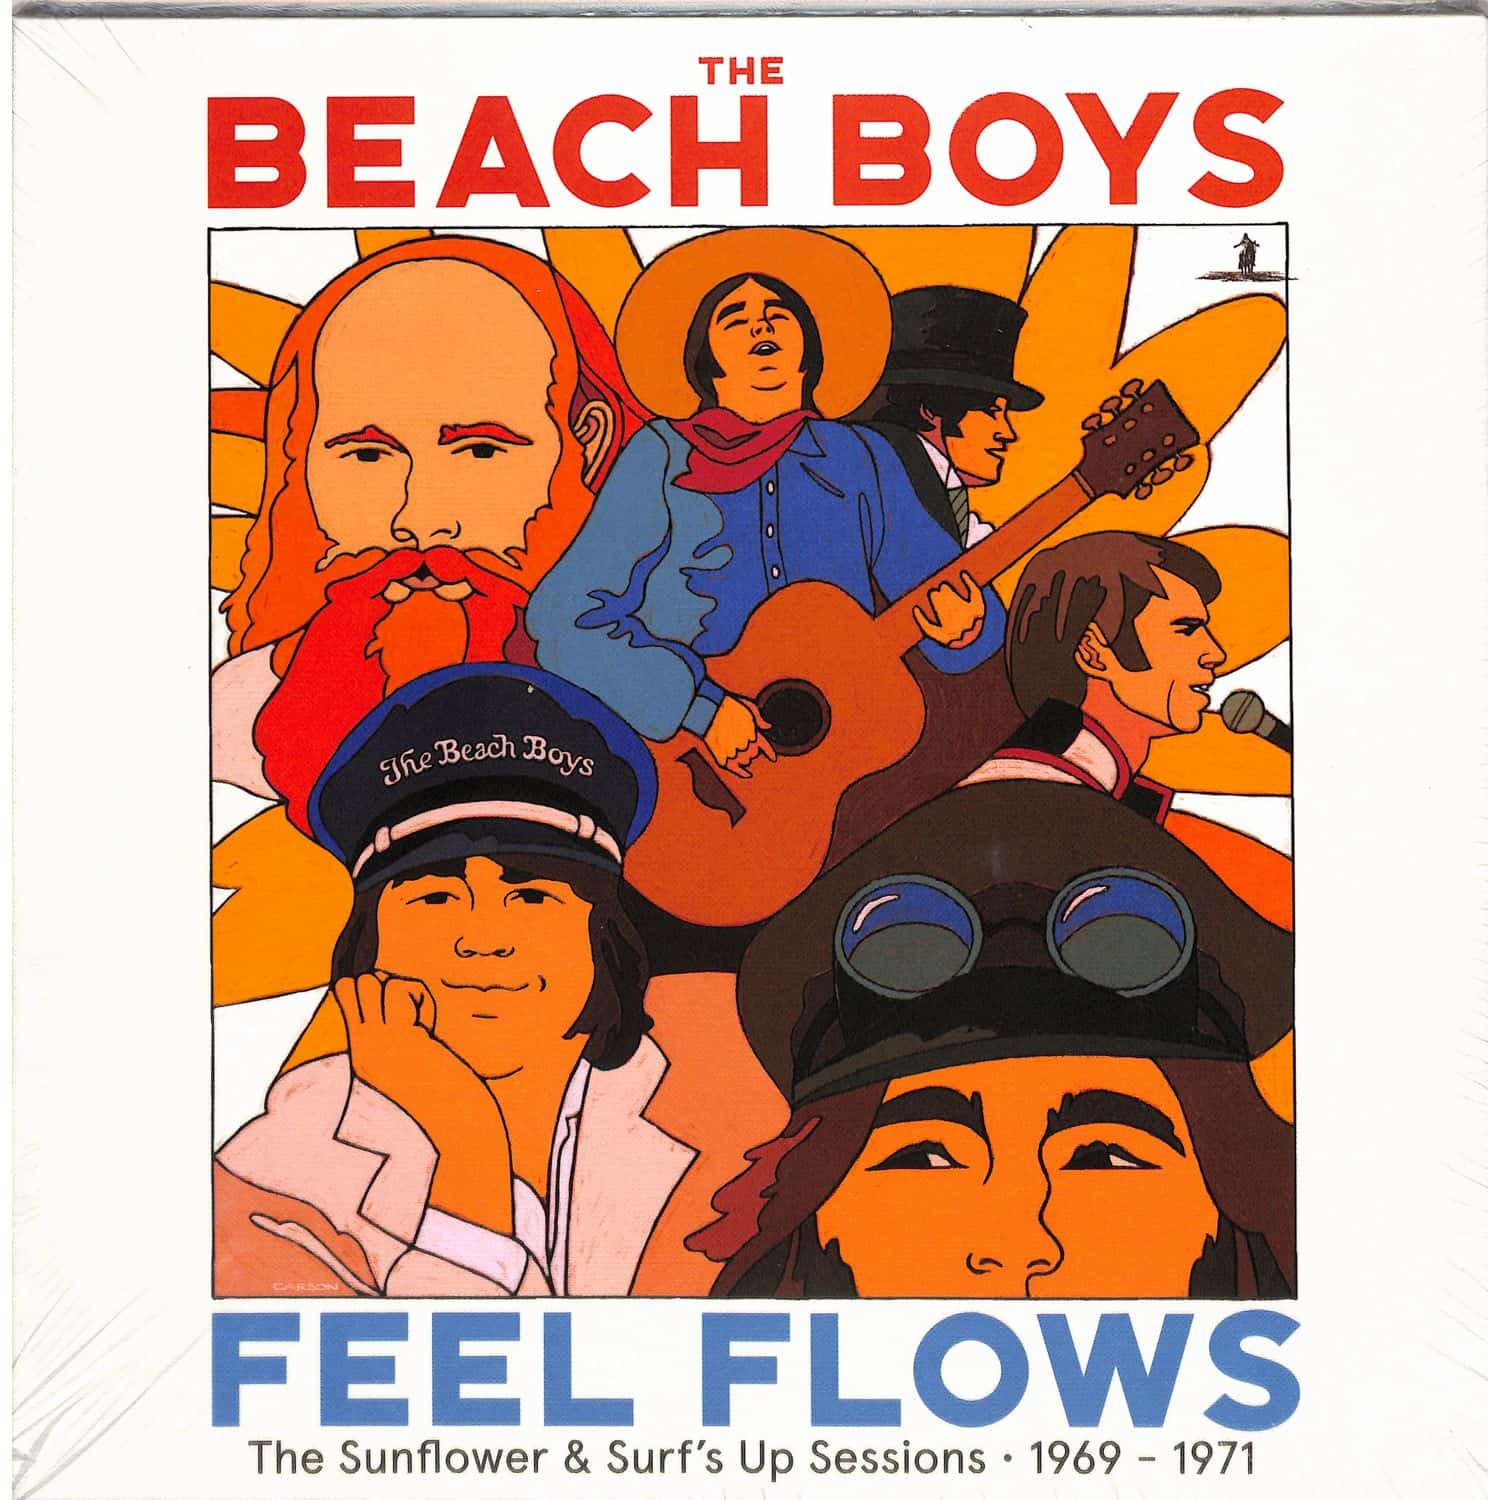 The Beach Boys - FEEL FLOWS - SESSIONS 1969-71 